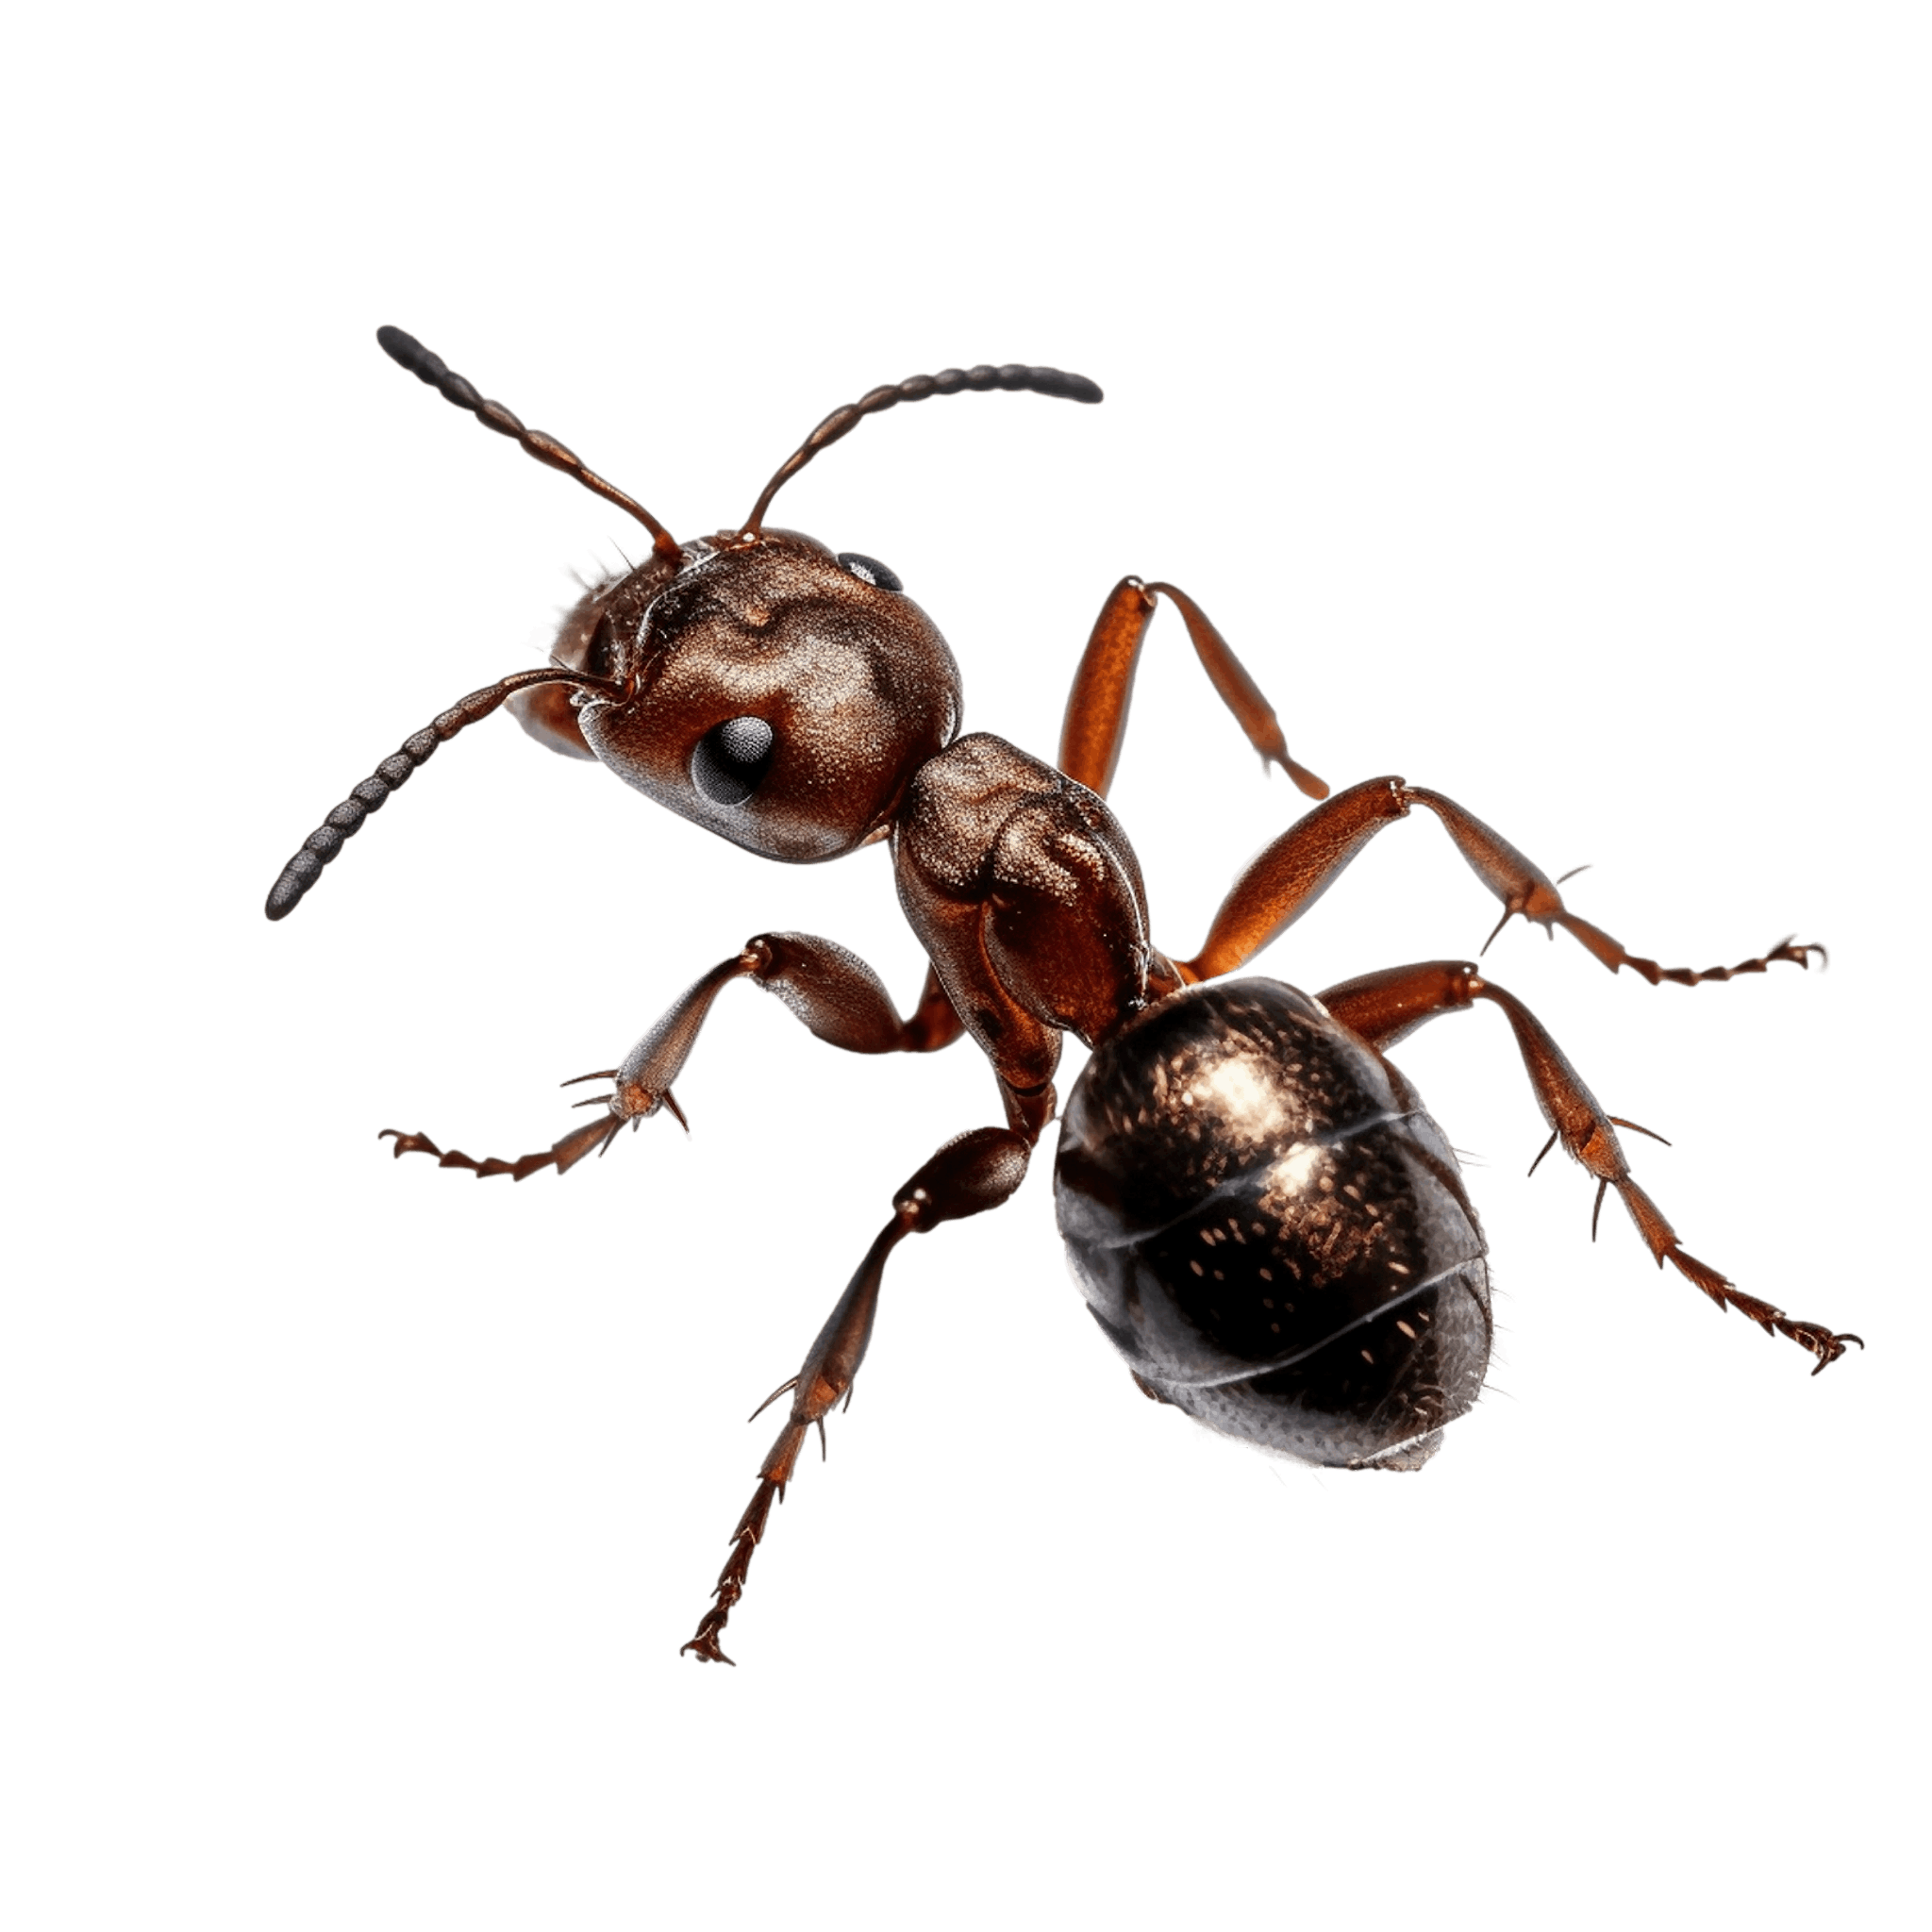 Les fourmis du jardin